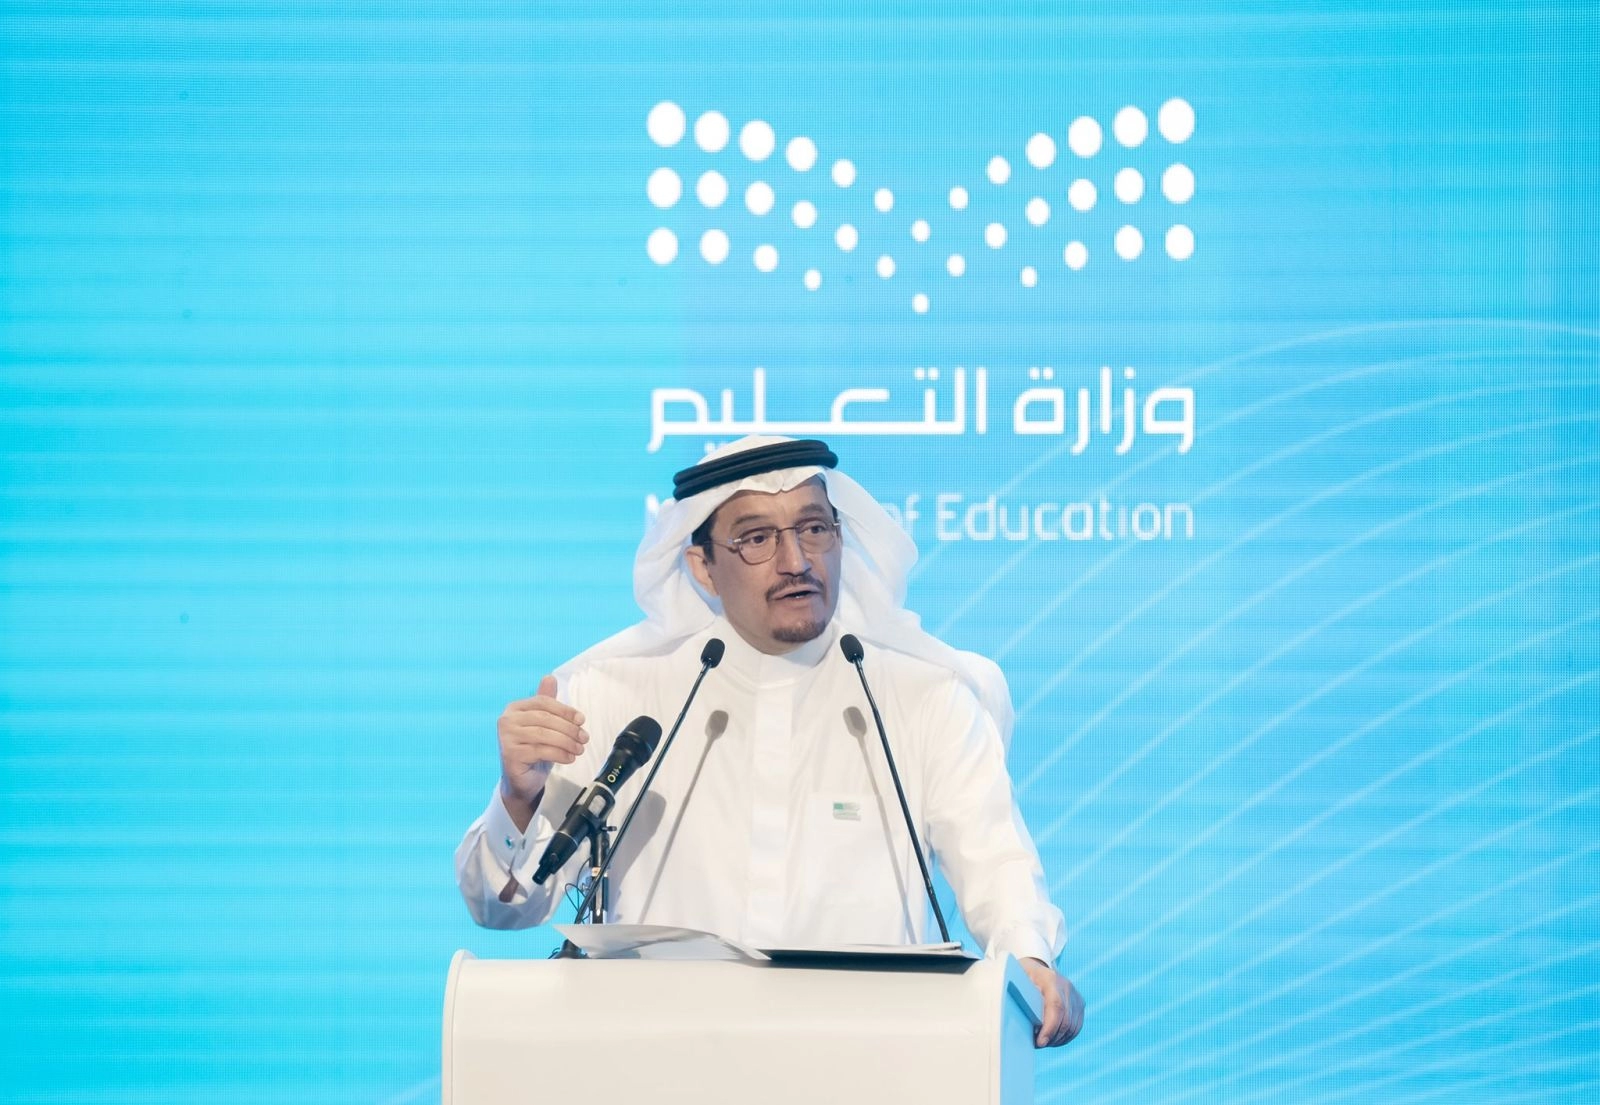 عاجل : وزارة التعليم السعودية تعلن رسمياً عودة نظام الفصلين الدراسين وإلغاء الفصل الثالث